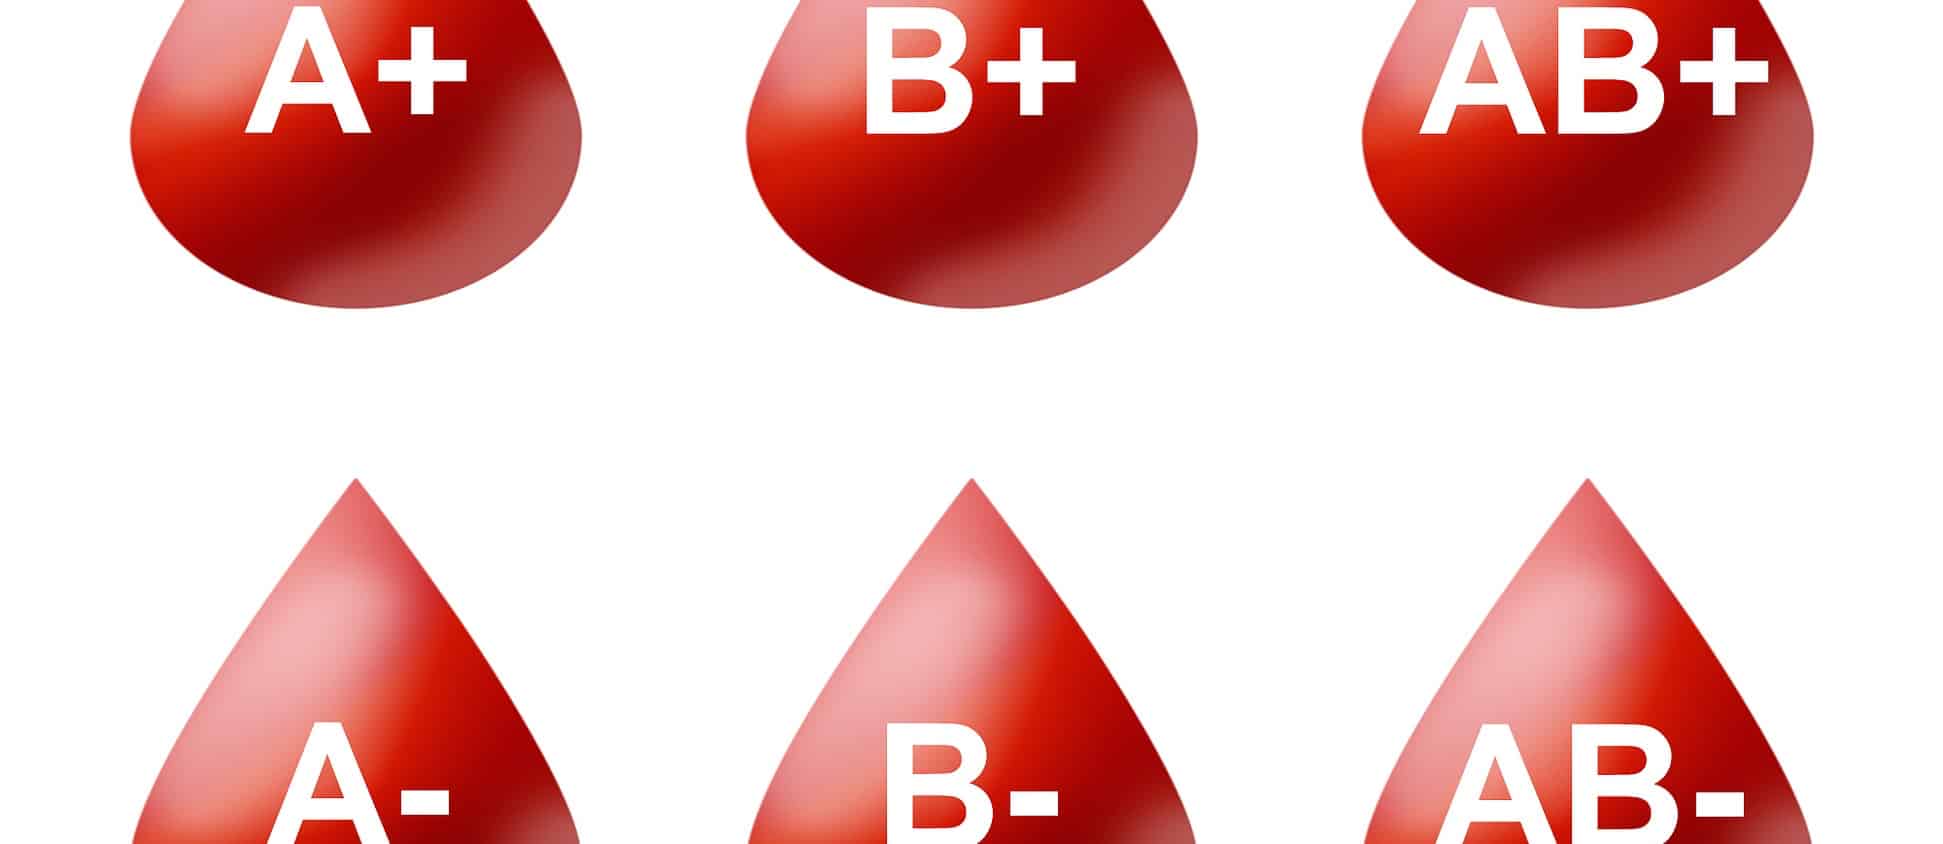 Группа крови звезда. Группа крови. Первая группа крови. Gruppa krova. Вторая группа крови.